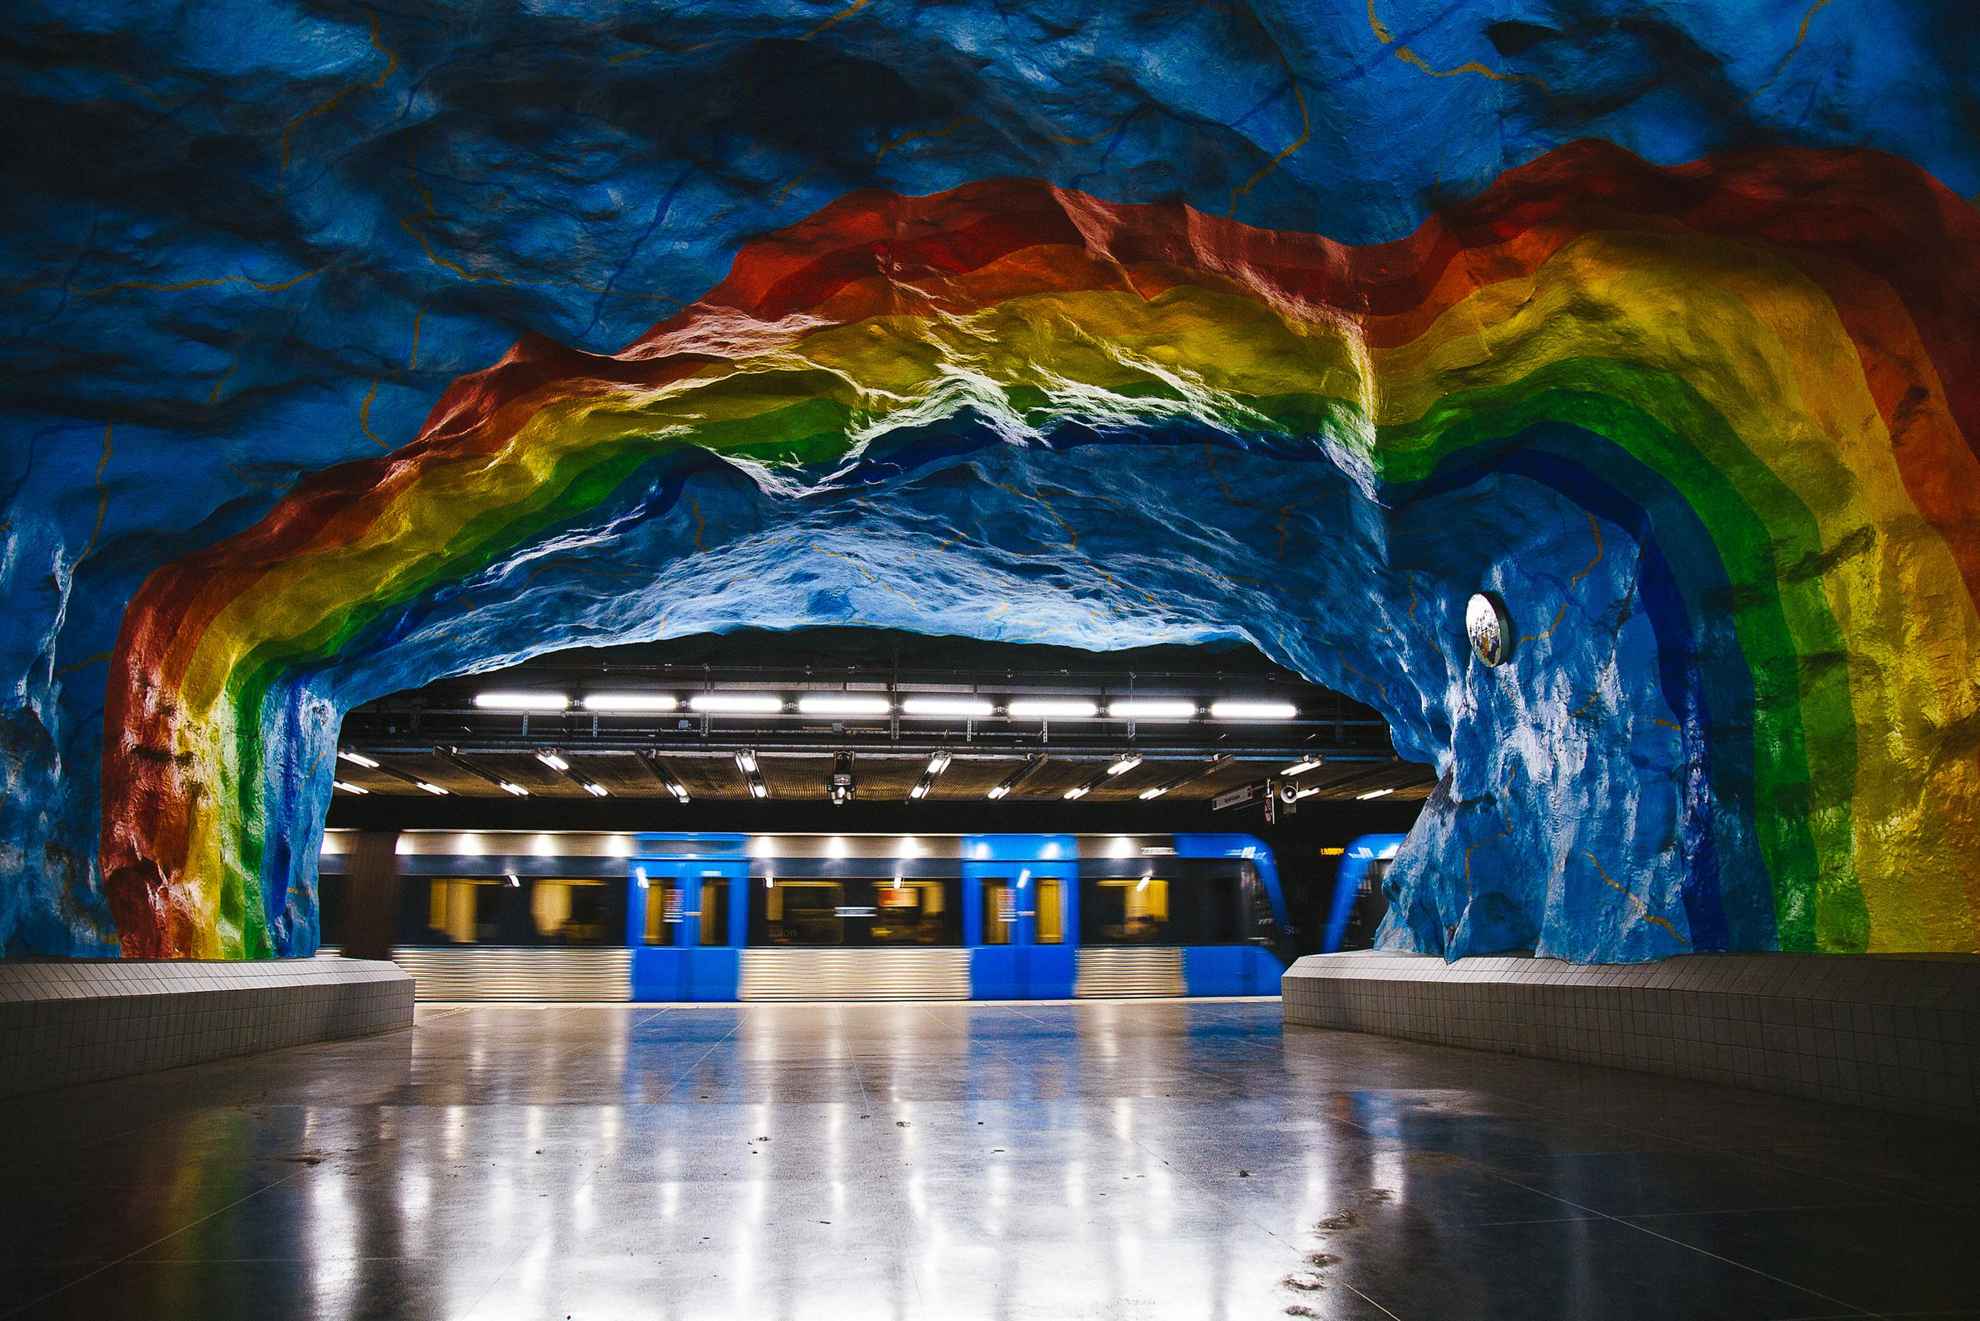 Rotsen in regenboogkleuren. Op de achtergrond een blauwe metro.